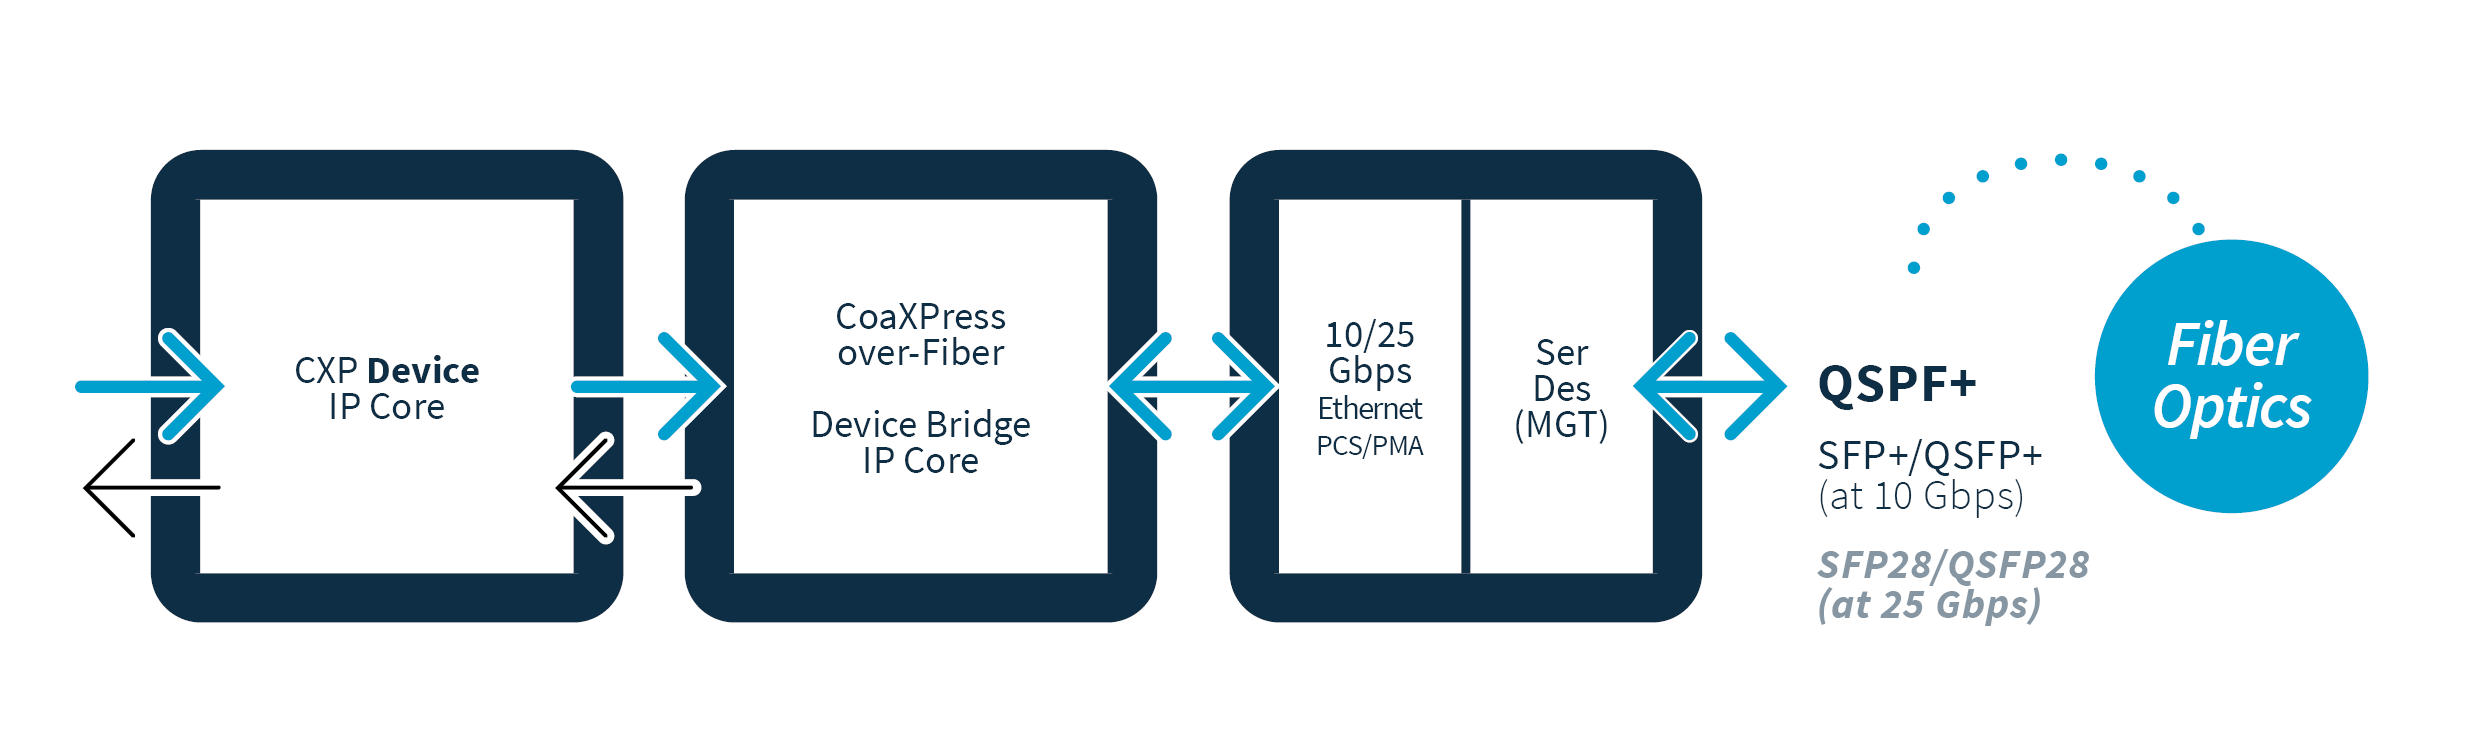 CoaXPress-over-Fiber Bridge IP Core Description